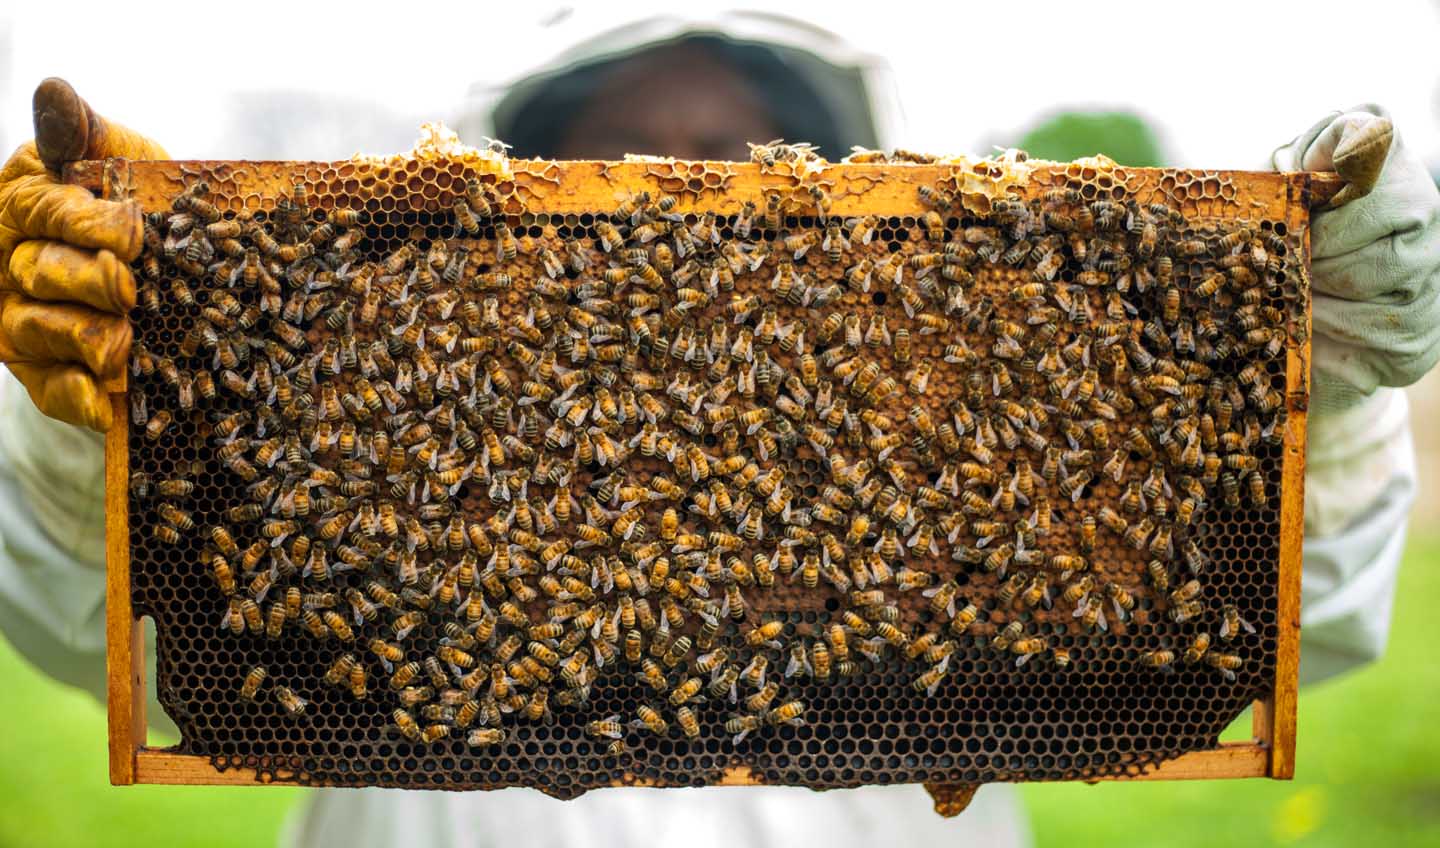 Um apicultor local orgulhosamente produzindo mel de qualidade  - Photo by Timothy Paule II from Pexels
